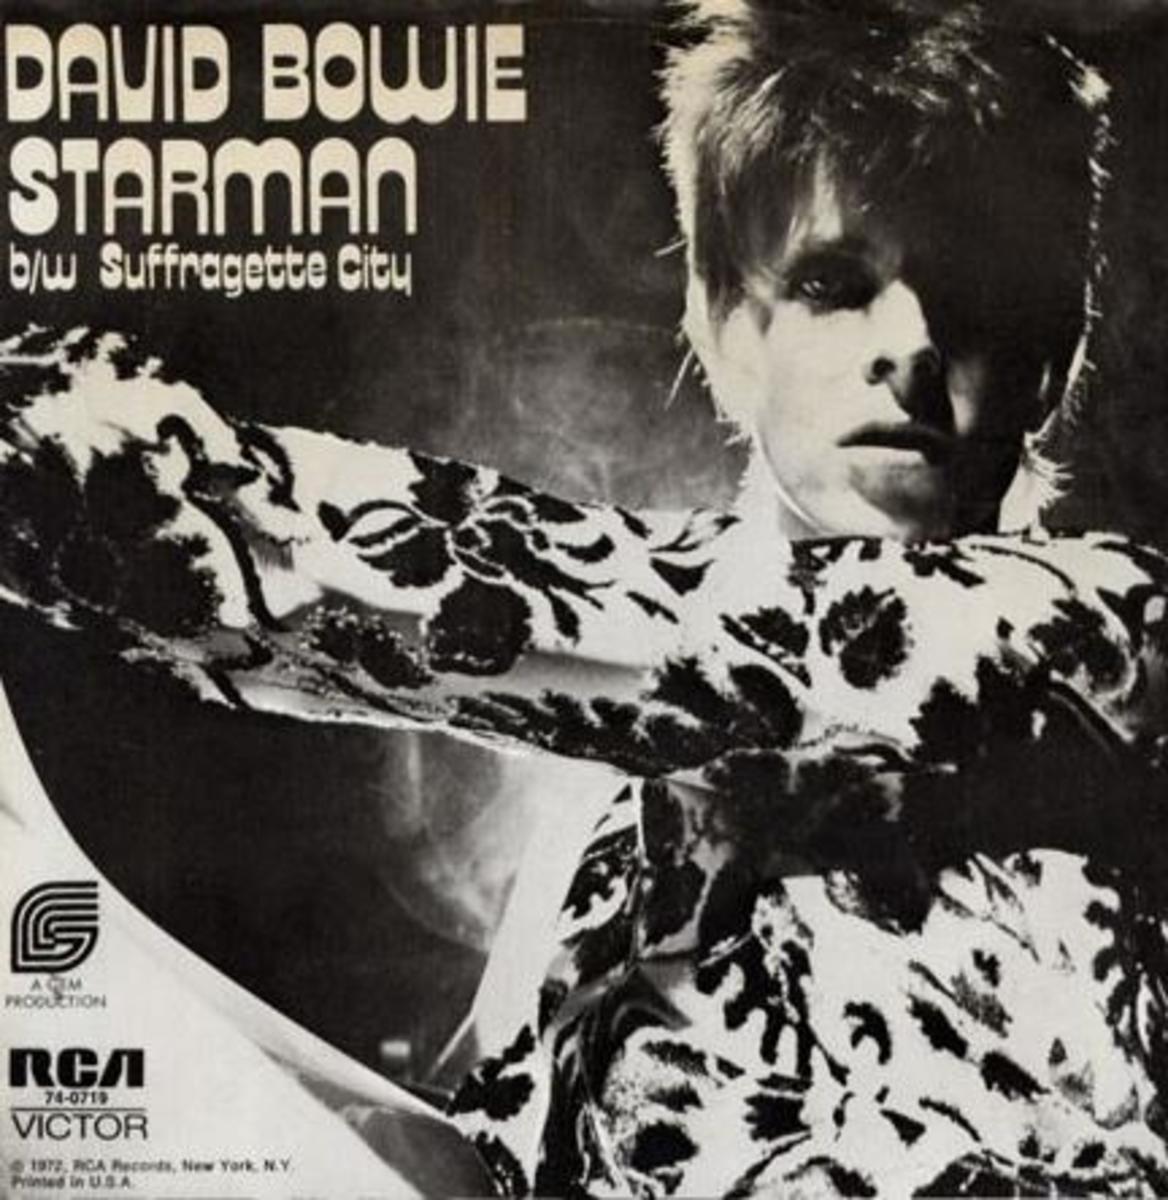 Bowie flip side